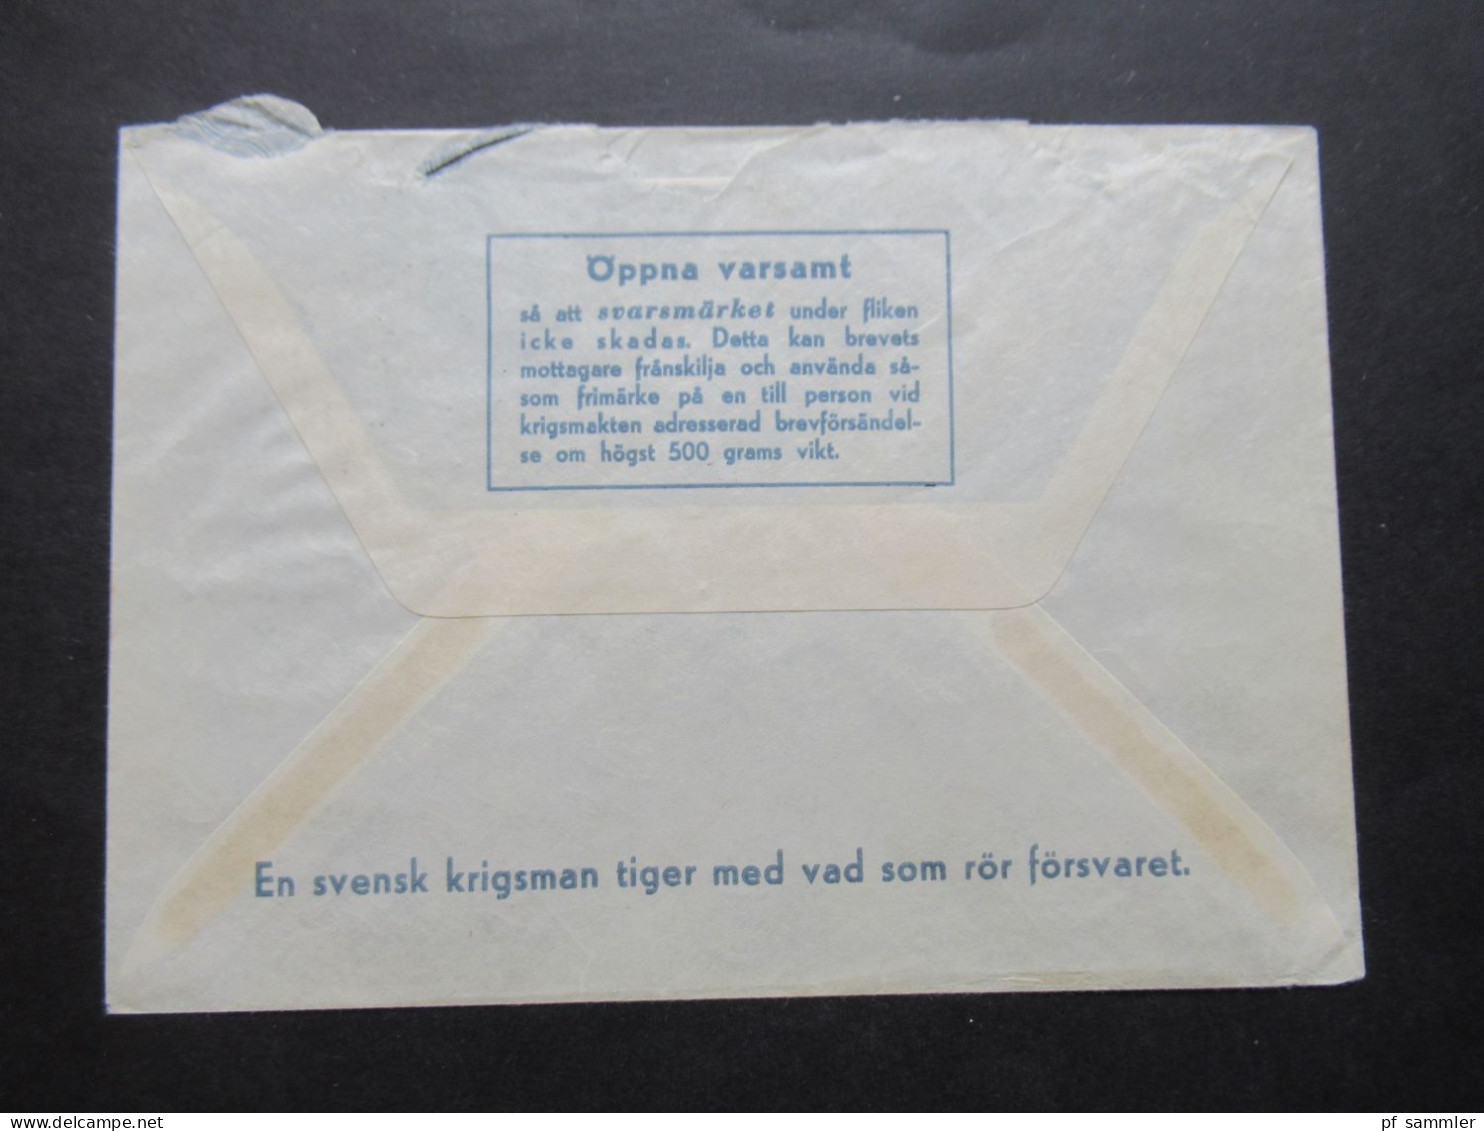 1966 Schweden Militärpost Militärbrev Stempel Svenska FN Bat Cypern / Schwedisches Militär Auf Zypern / FN Bat STR Komp - Militaire Zegels